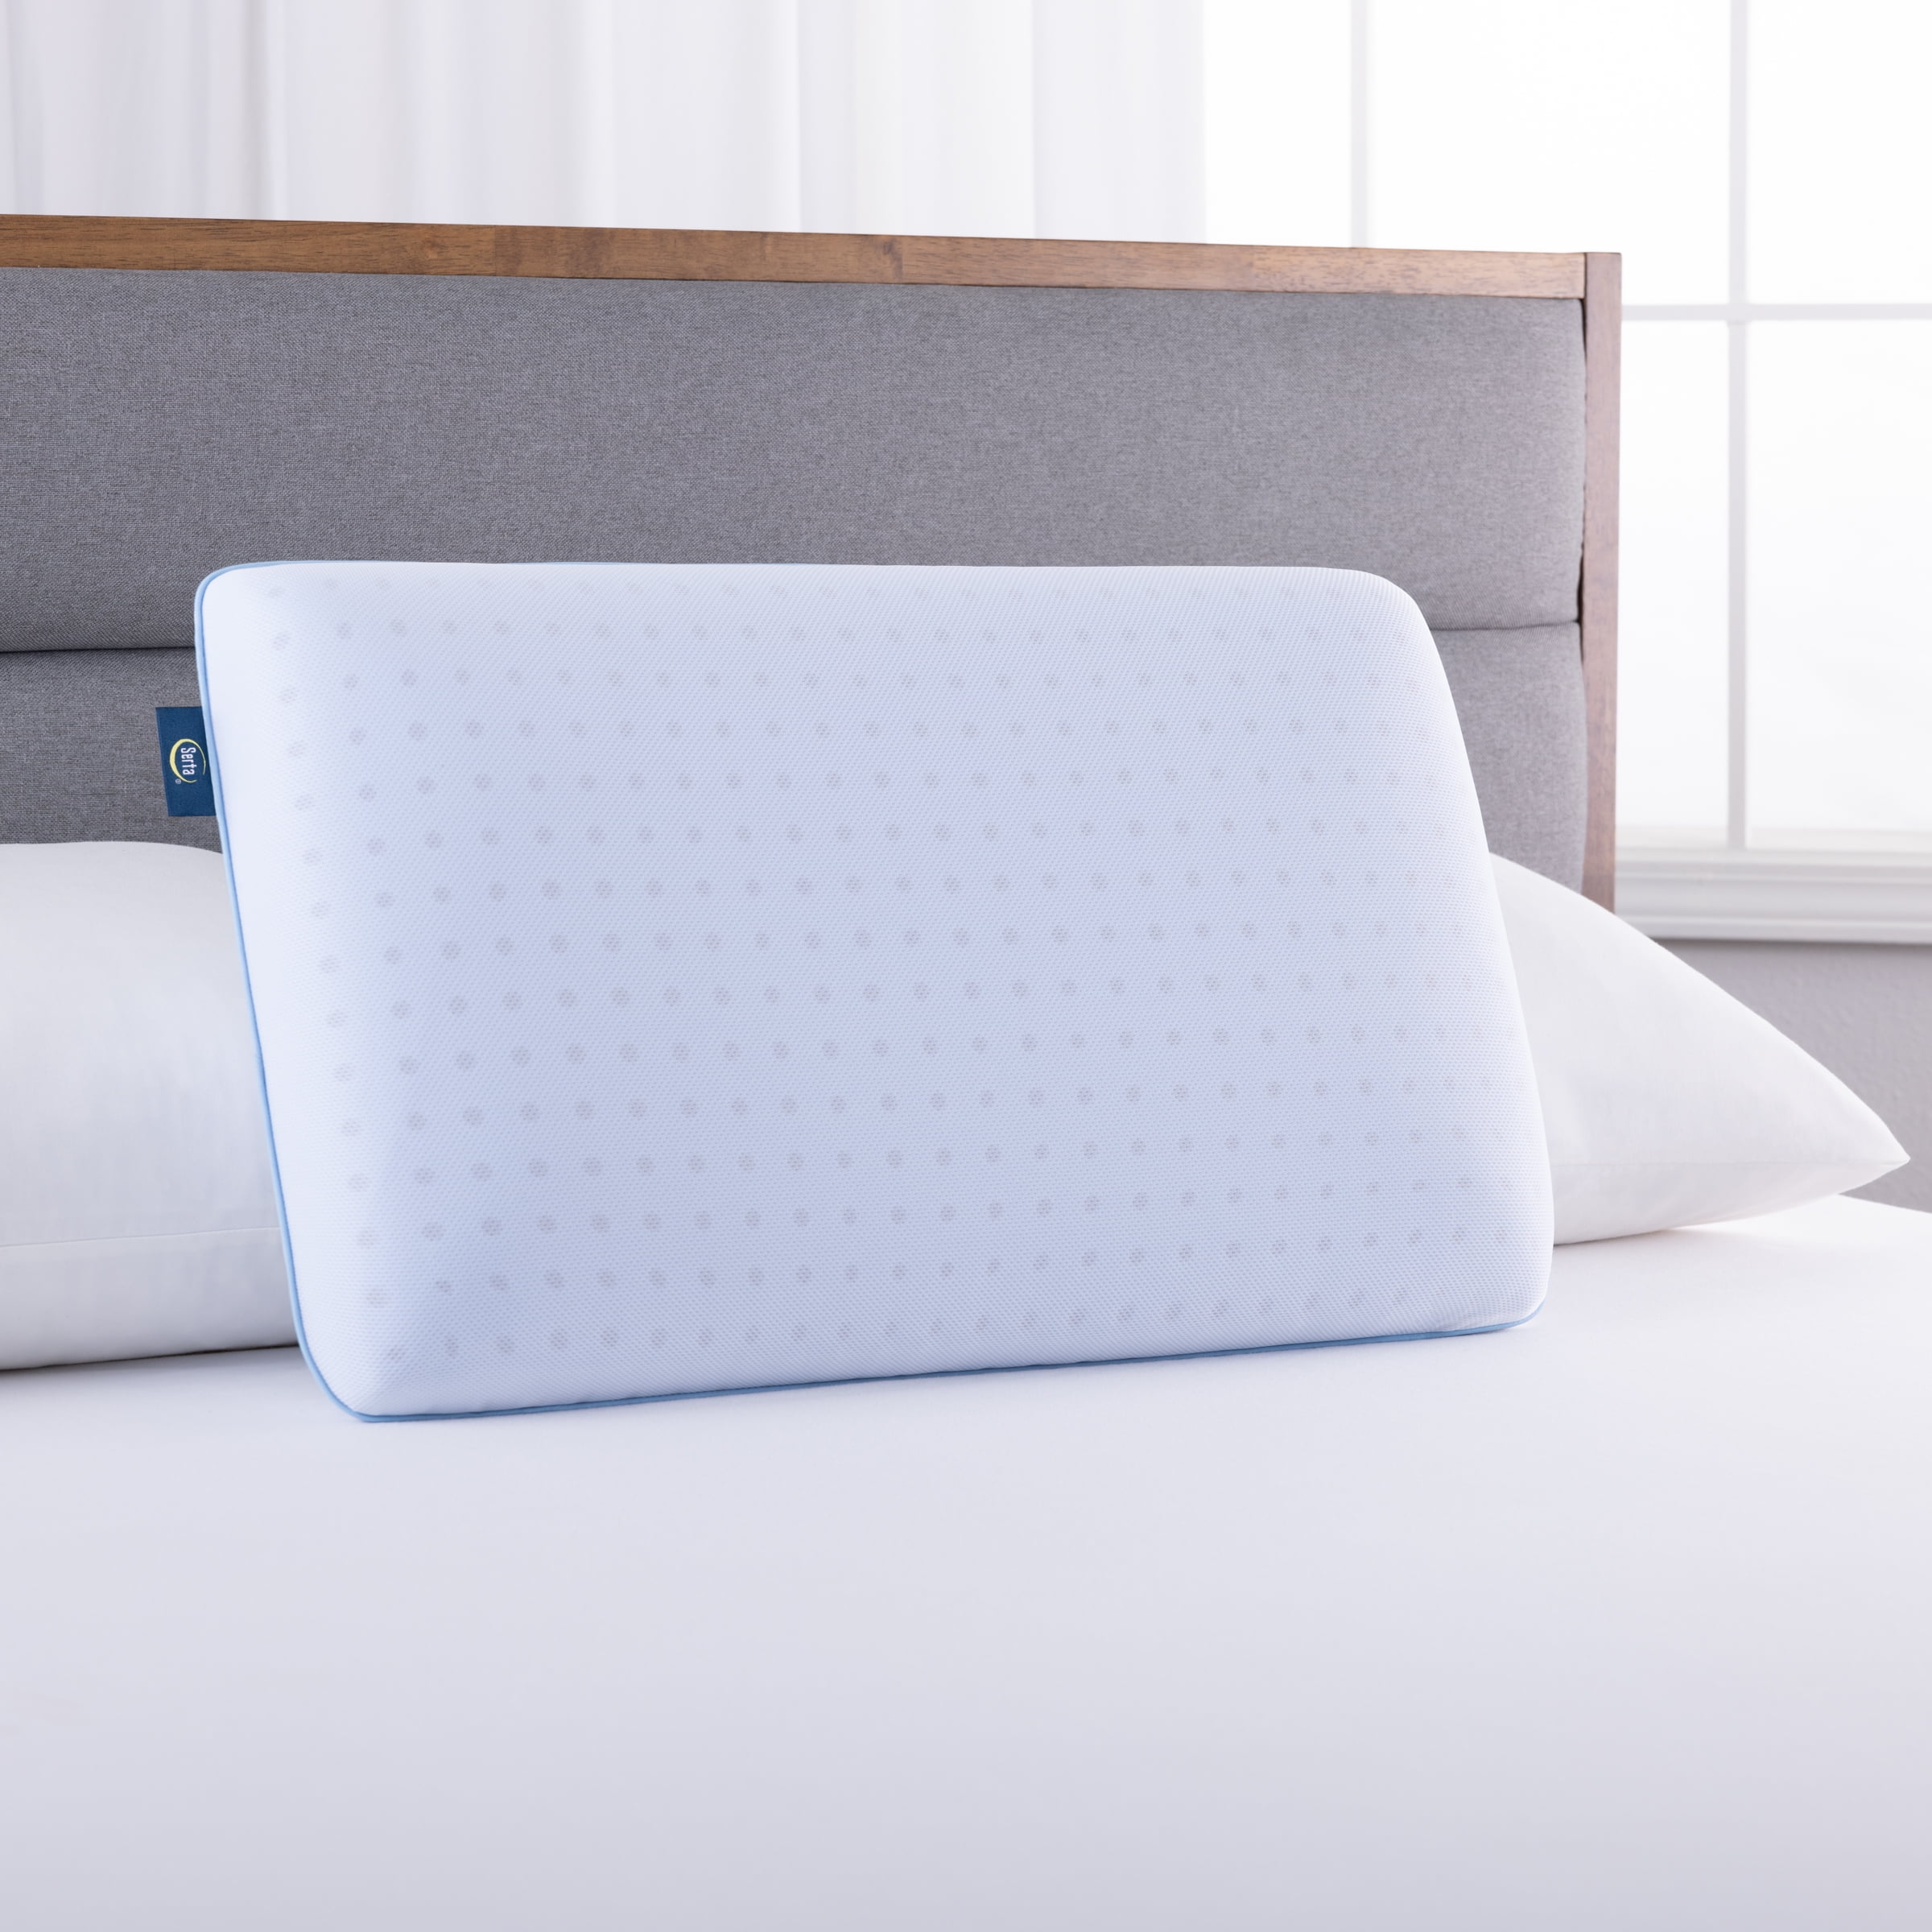 Sertapedic Thermagel Memory Foam Pillow, Standard Queen (16” x 26” x 5”)